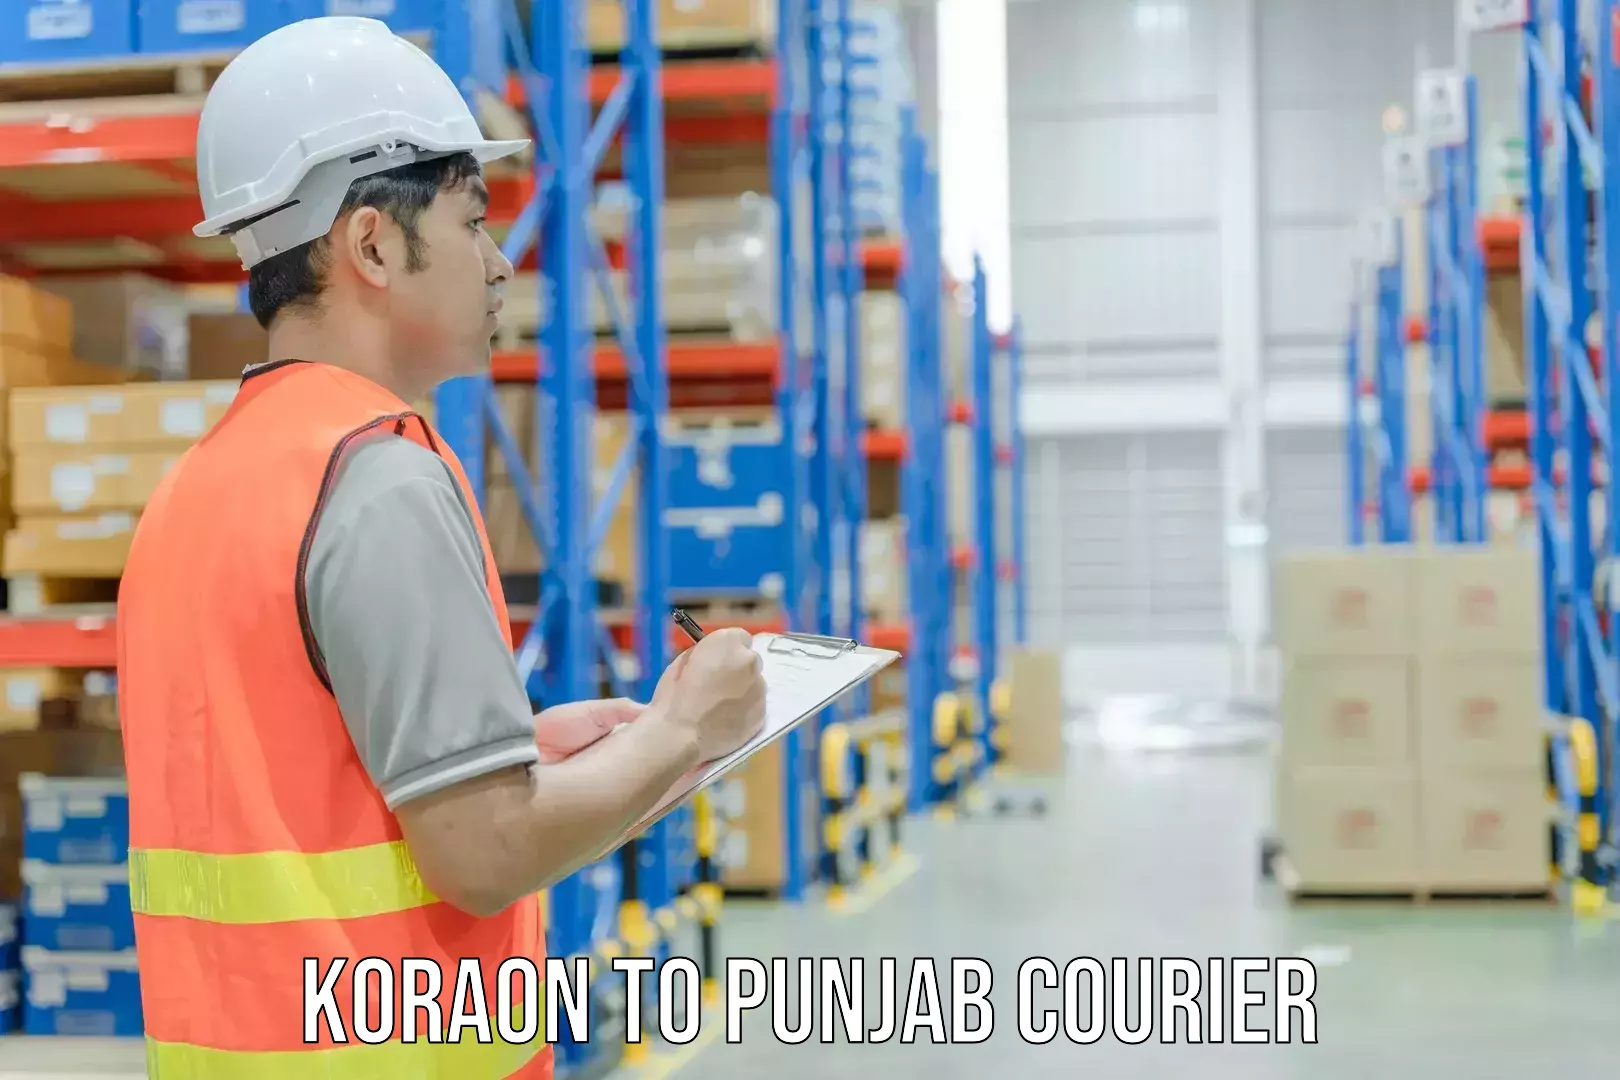 Urban courier service Koraon to Patiala